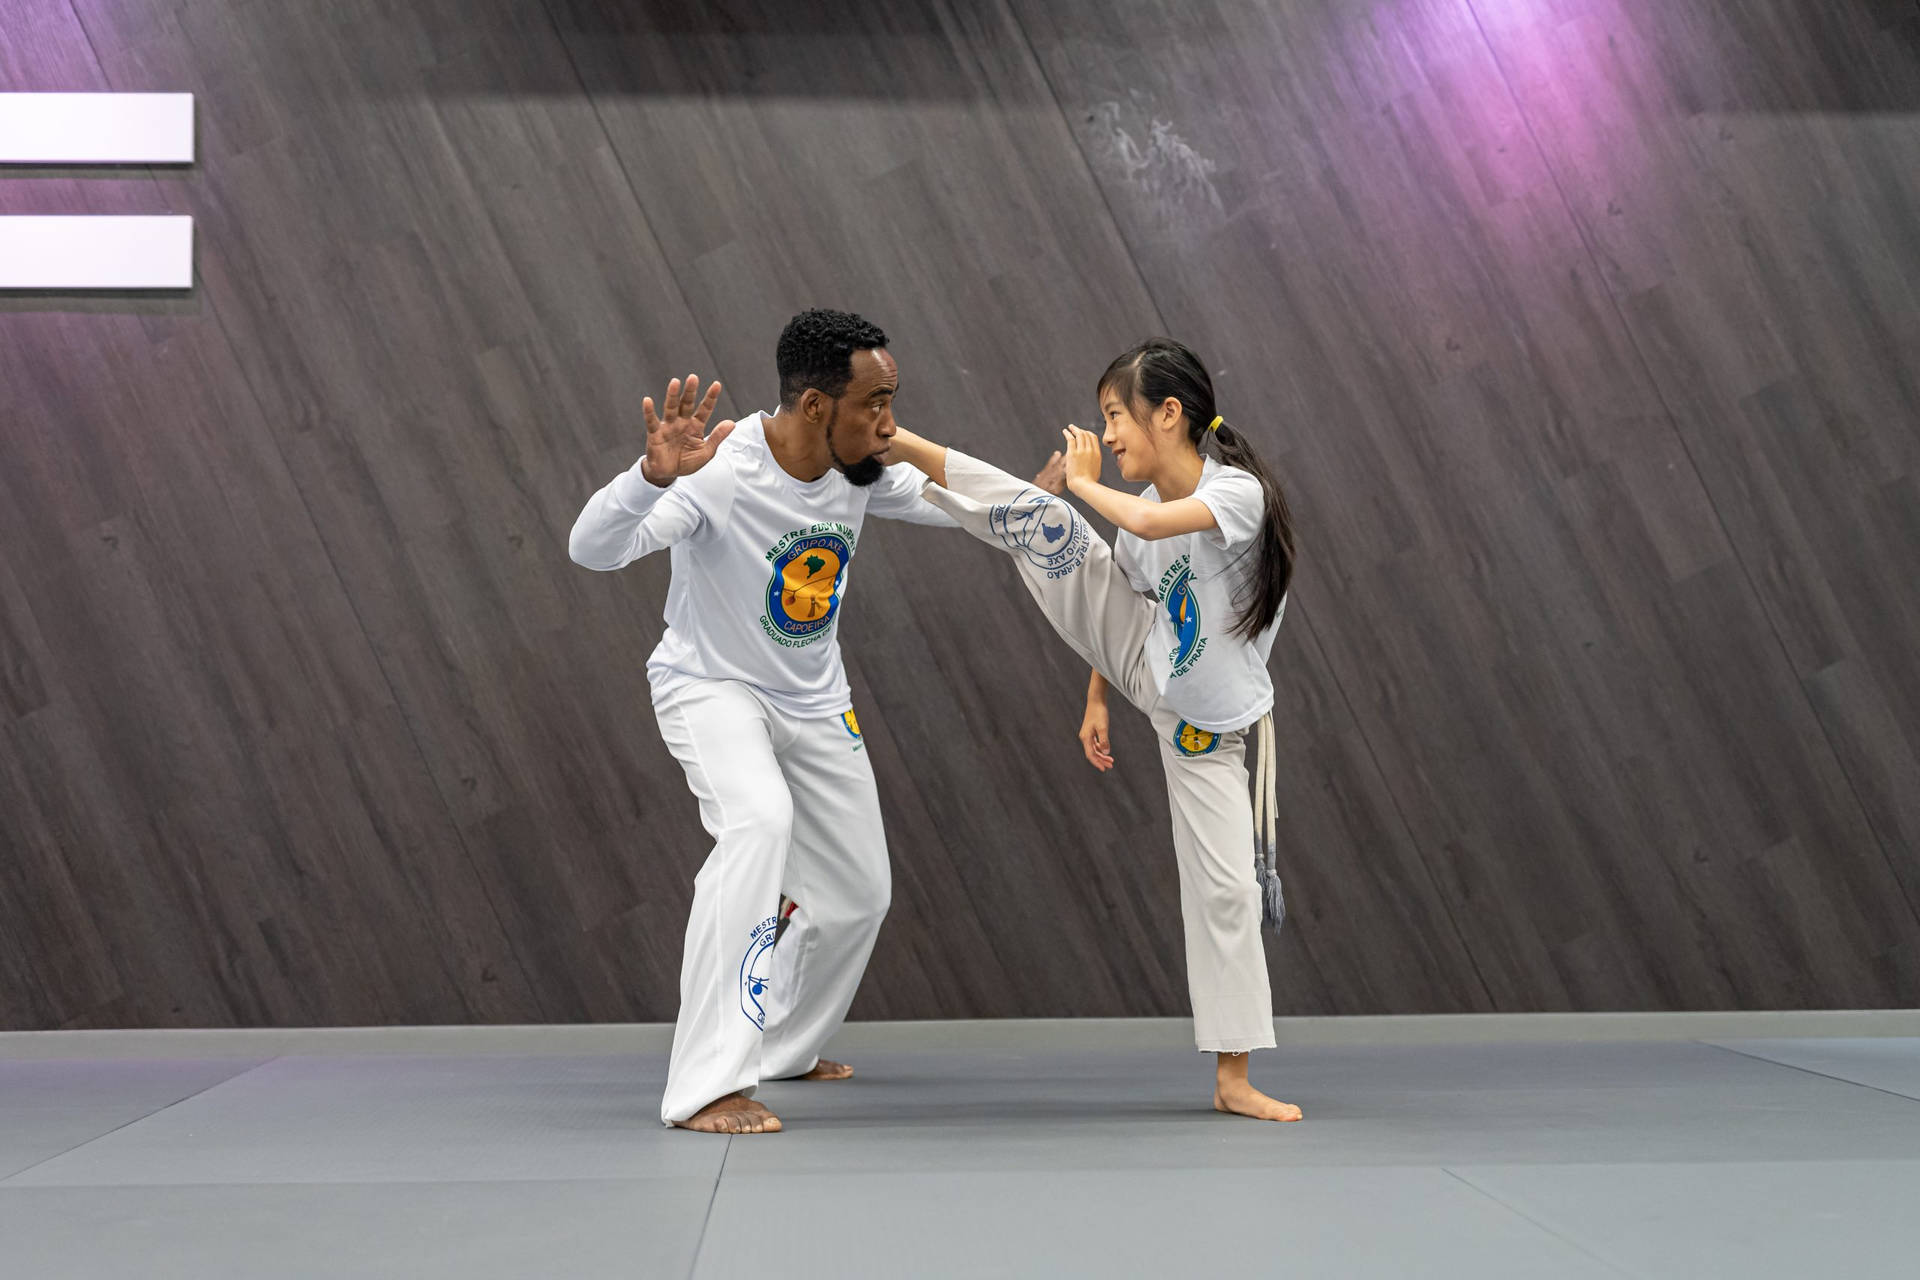 Capoeiratrainer Unterrichtet Einen Schüler Wallpaper